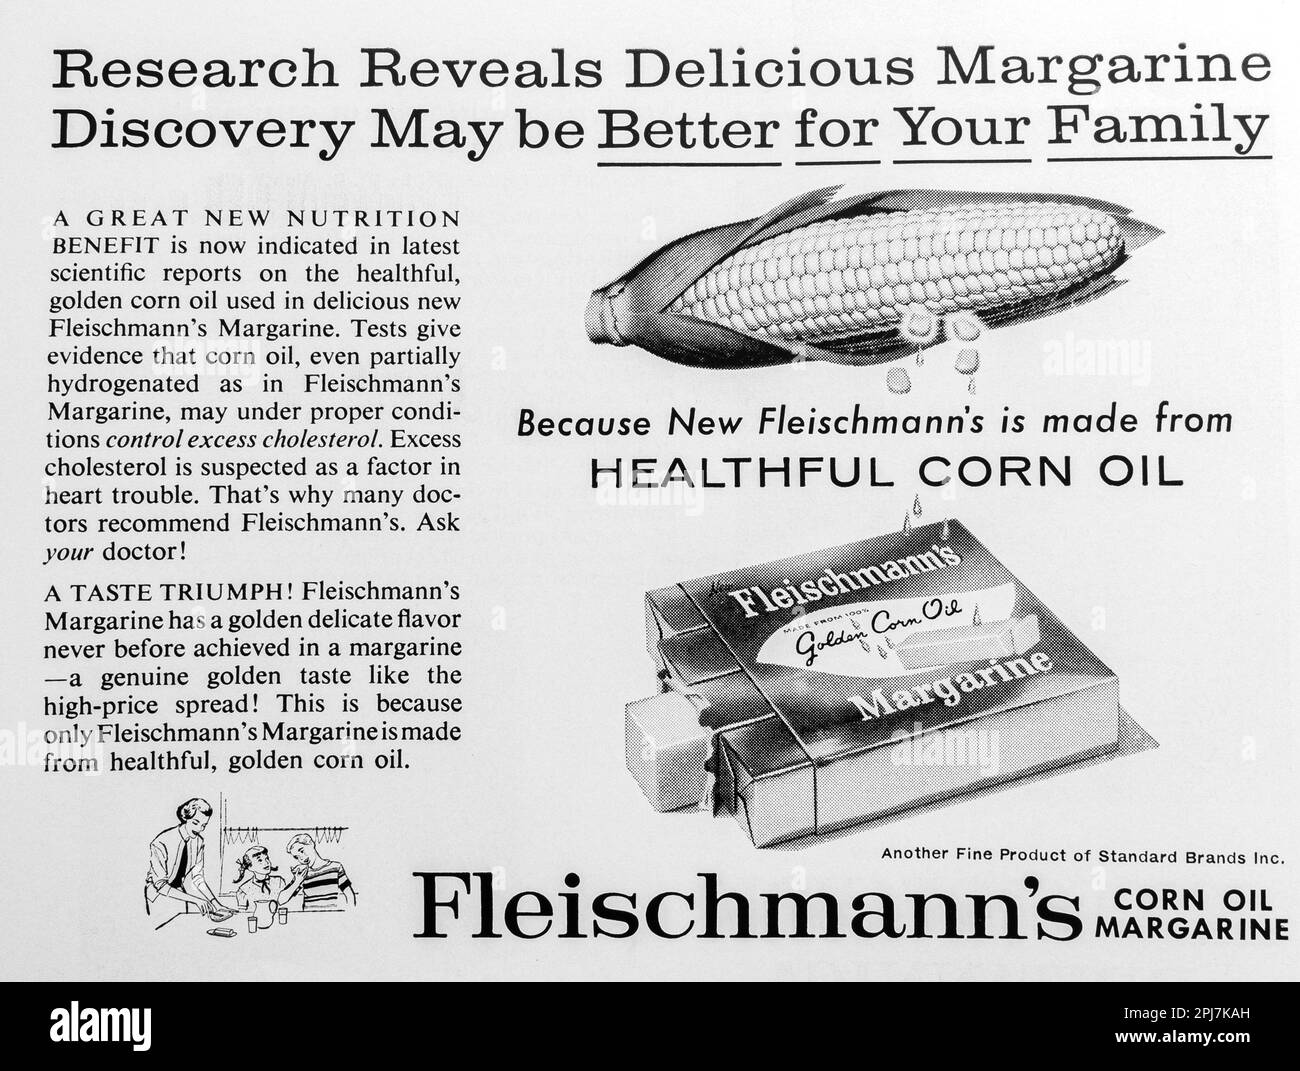 Publicité sur la margarine à l'huile de maïs de Fleischmann dans un magazine NatGeo, novembre 1959 Banque D'Images